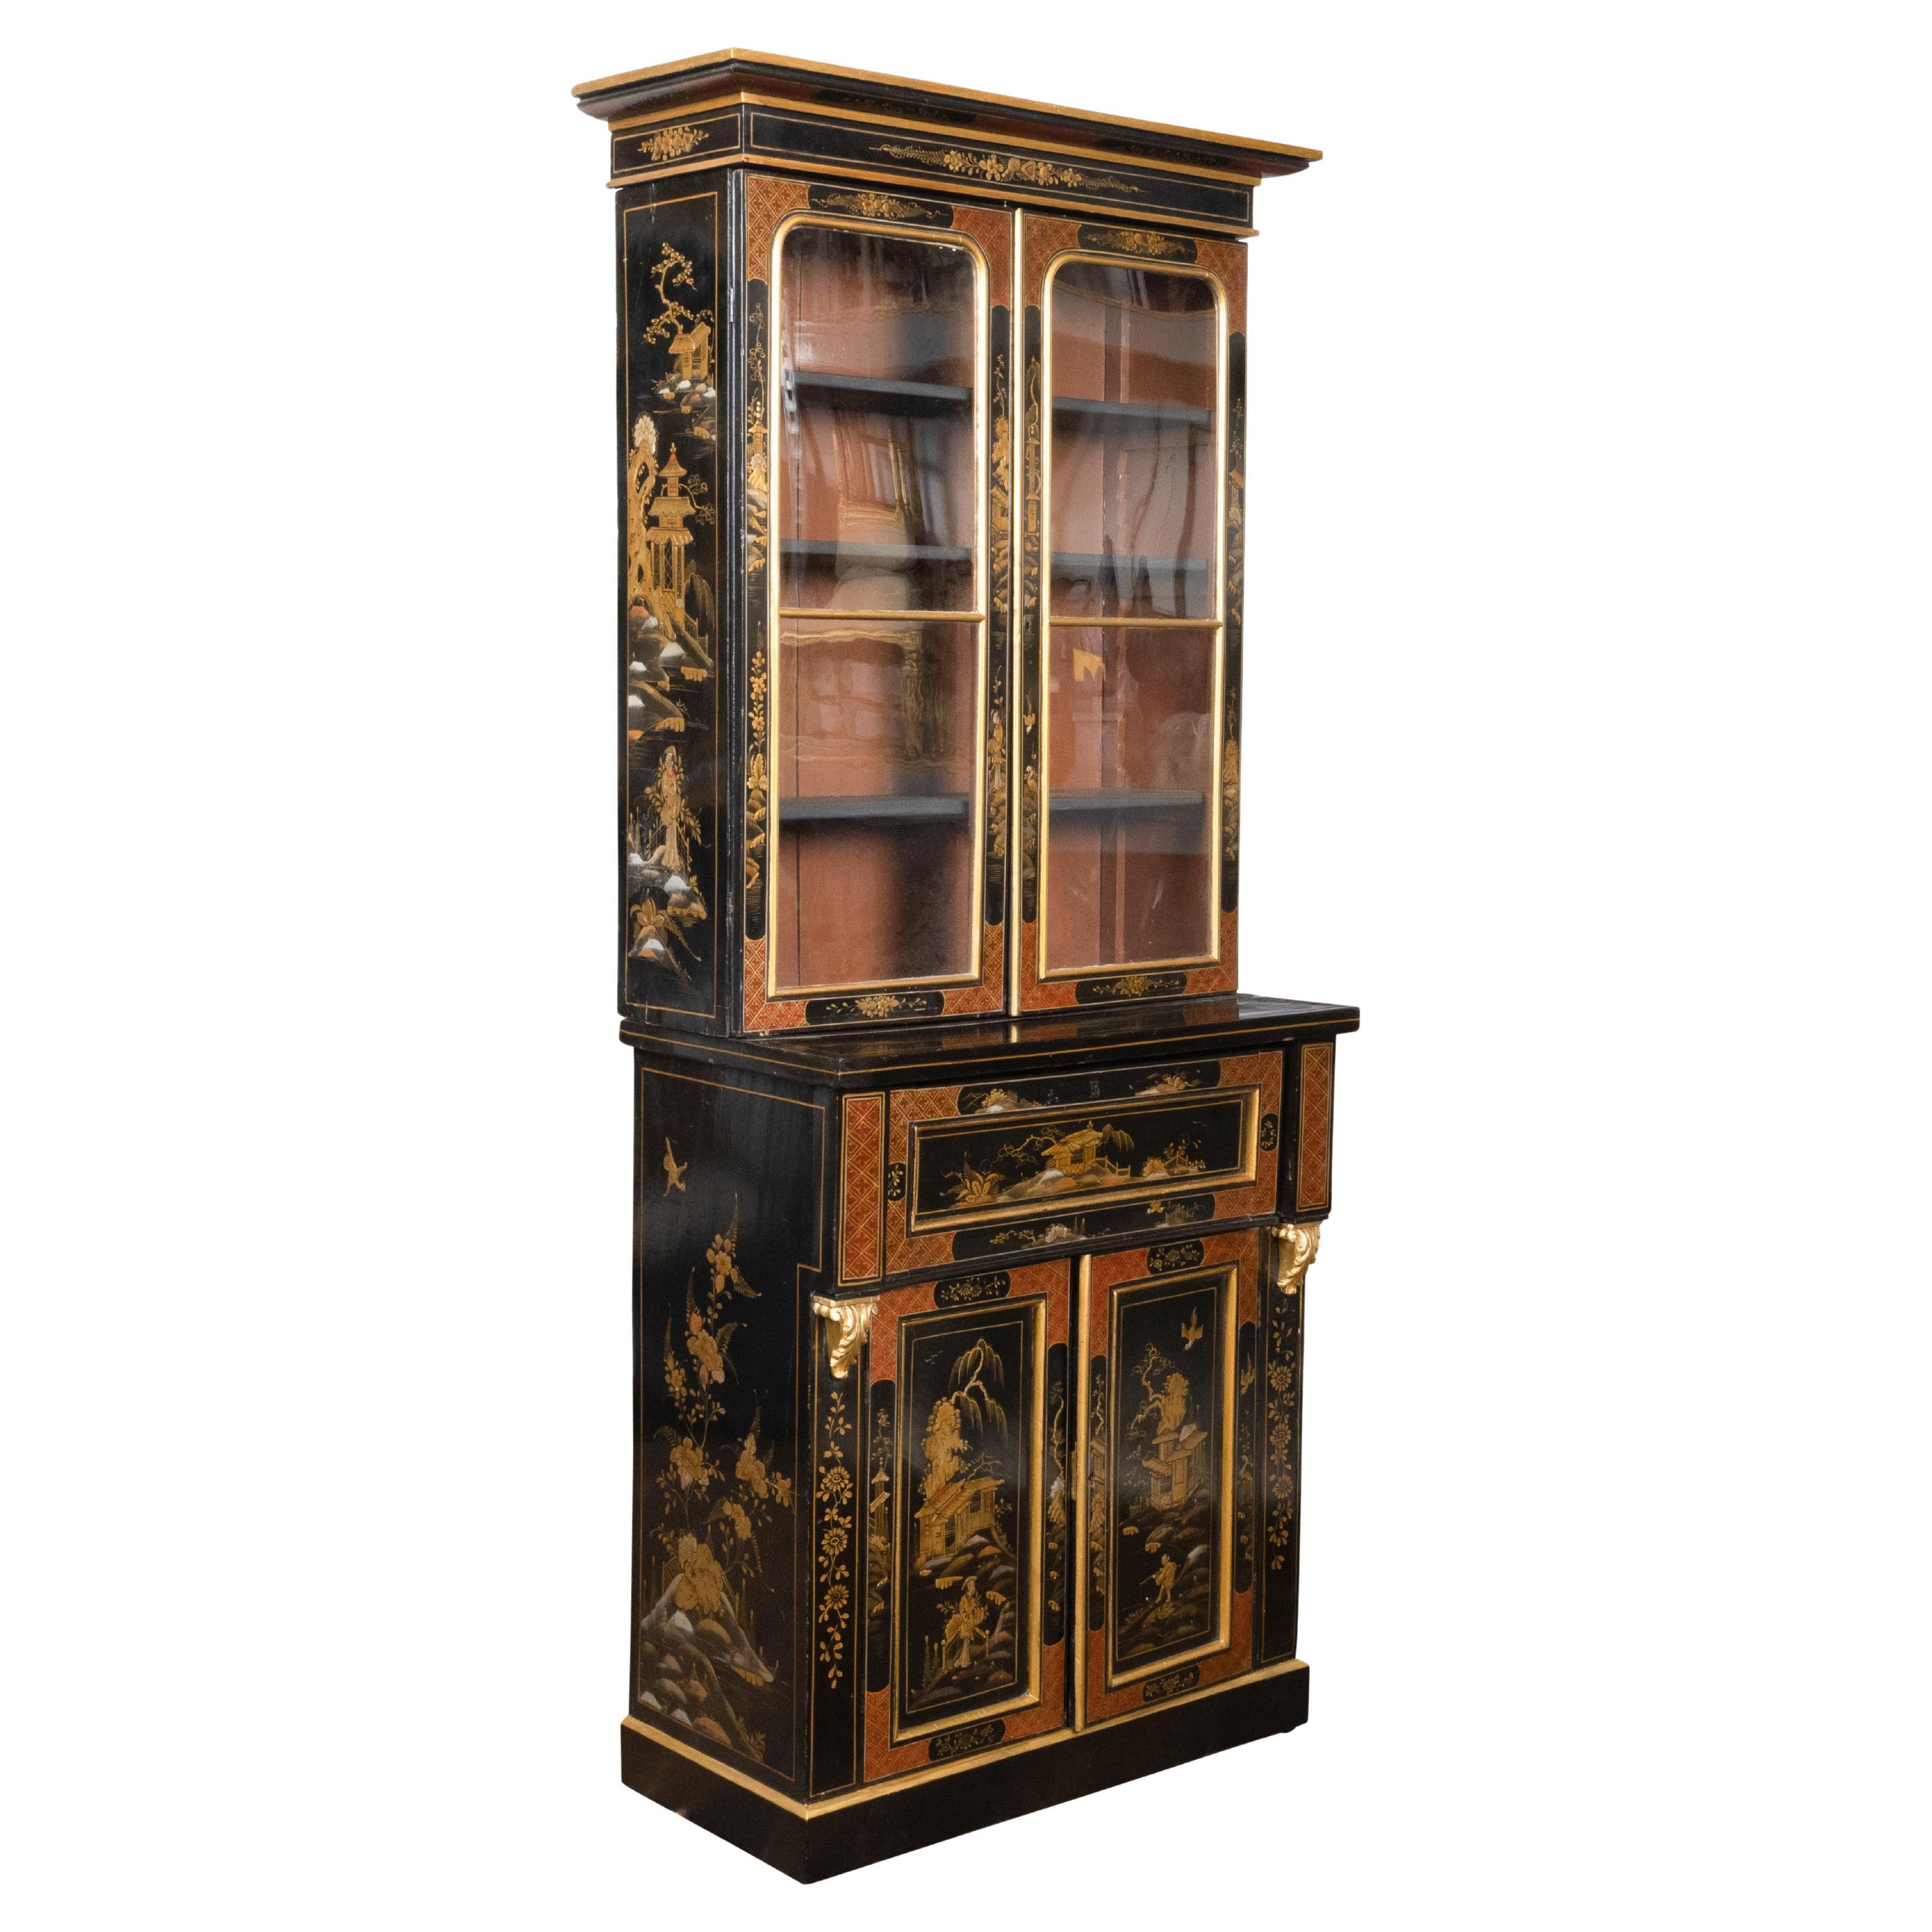 Englisches Sekretär-Bücherregal aus dem 19. Jahrhundert in Schwarz und Gold mit Chinoiserie- Dekor